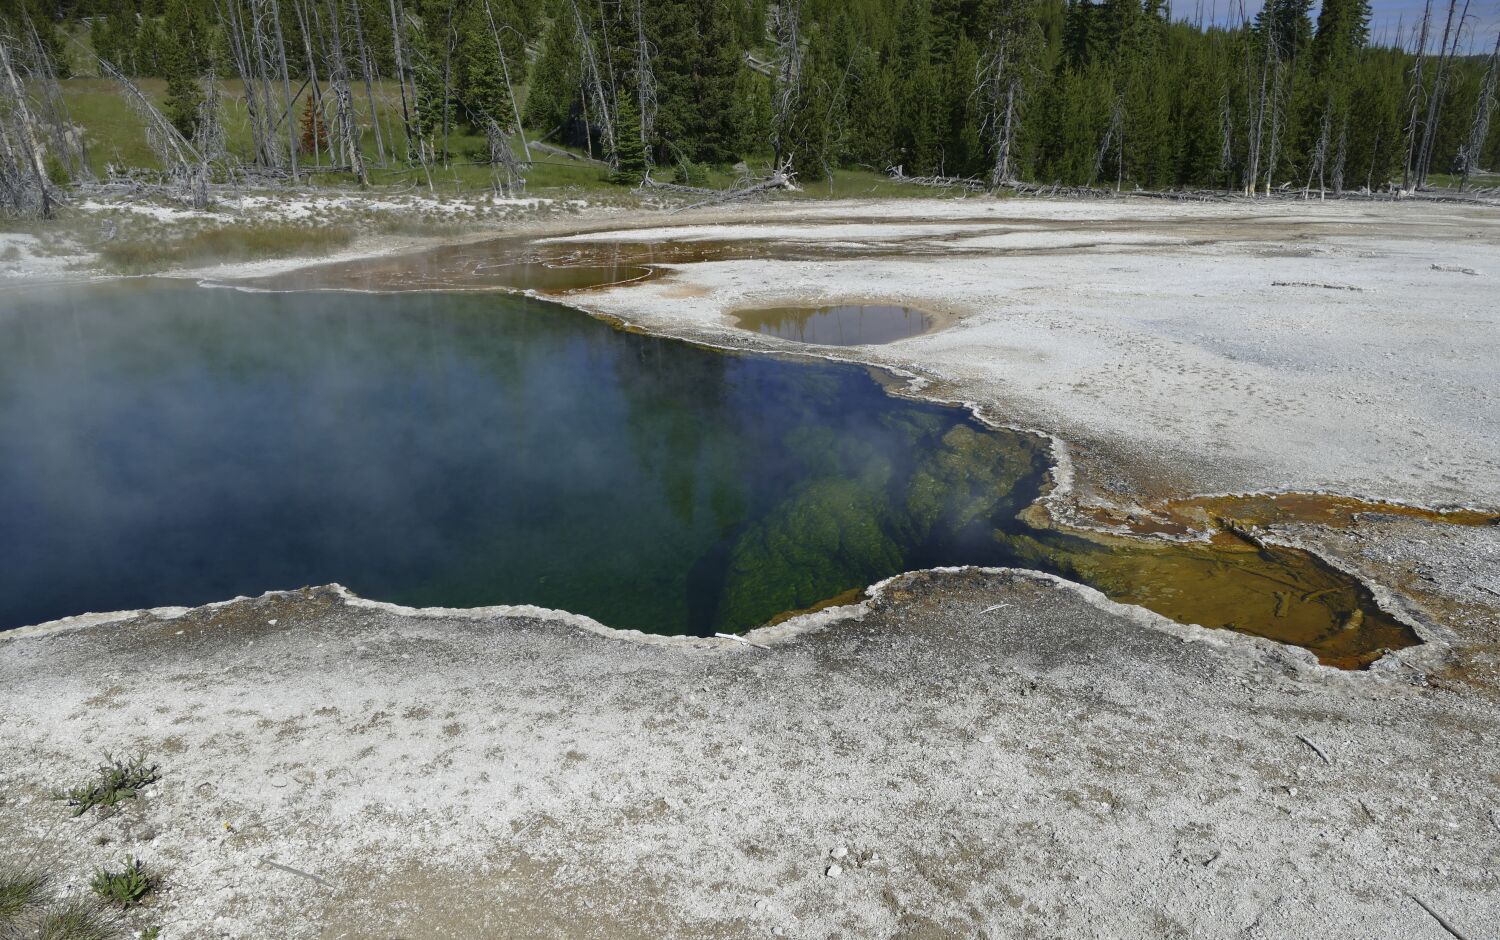 Yellowstone kaynağında yüzer halde bulunan ayak Los Angeles'lı bir adama aitti